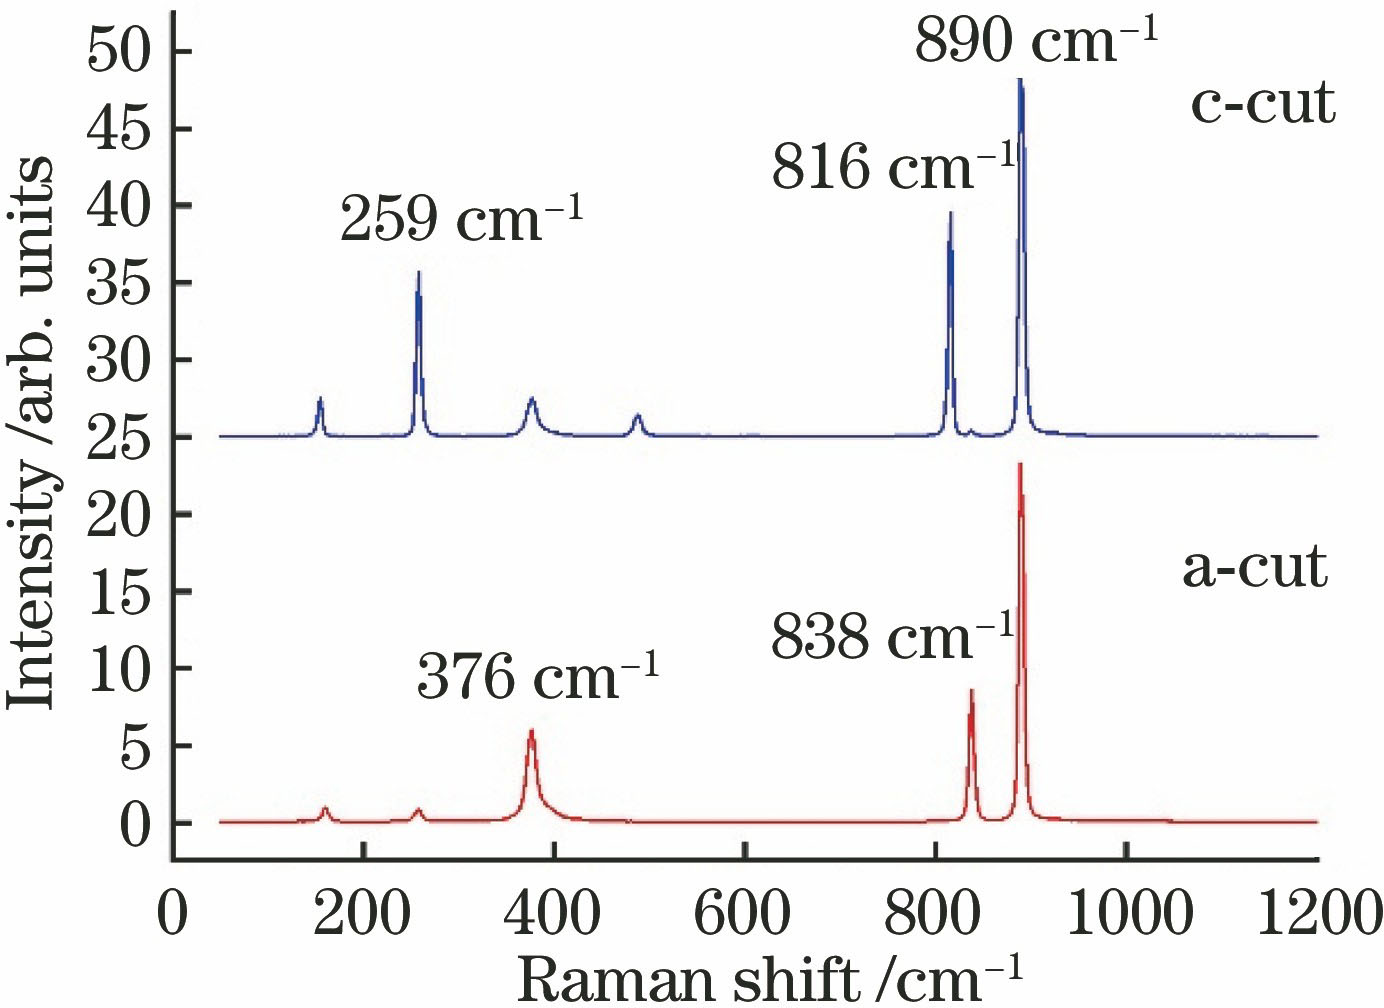 Raman shift characteristic diagram of YVO4 crystal[16]